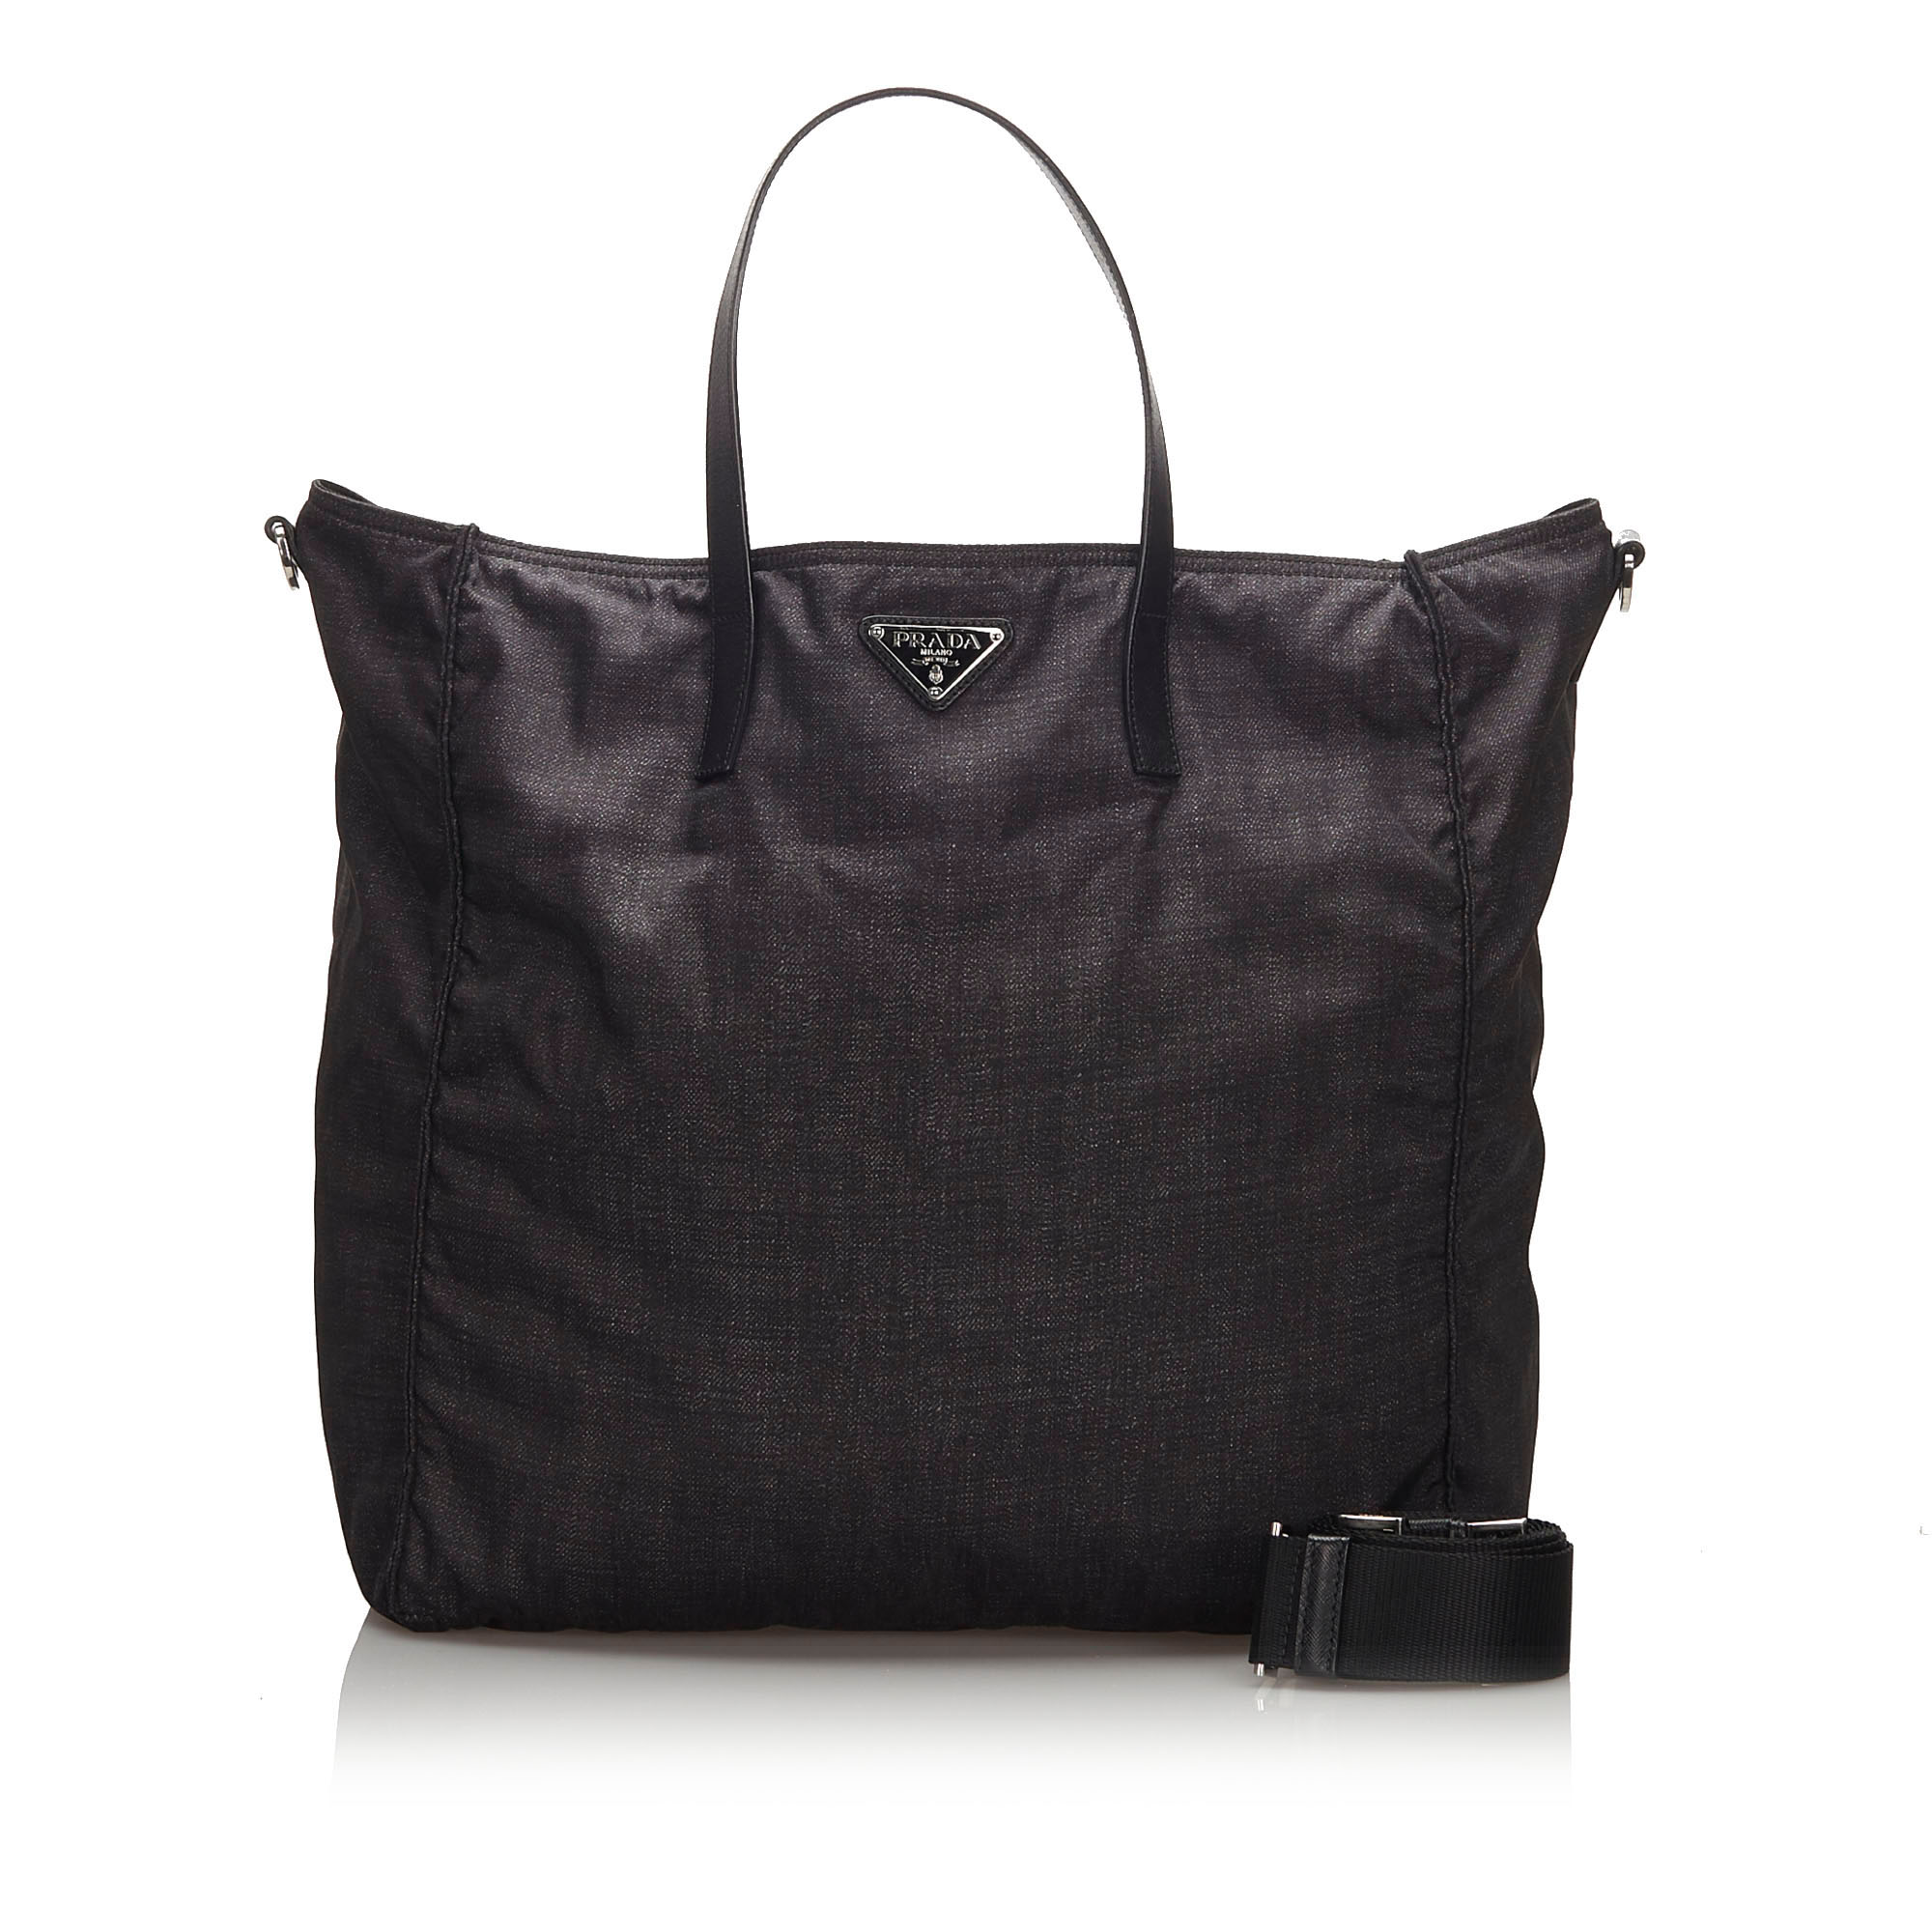 Pre-Loved Prada Black Nylon Fabric Tote Bag Italy | eBay